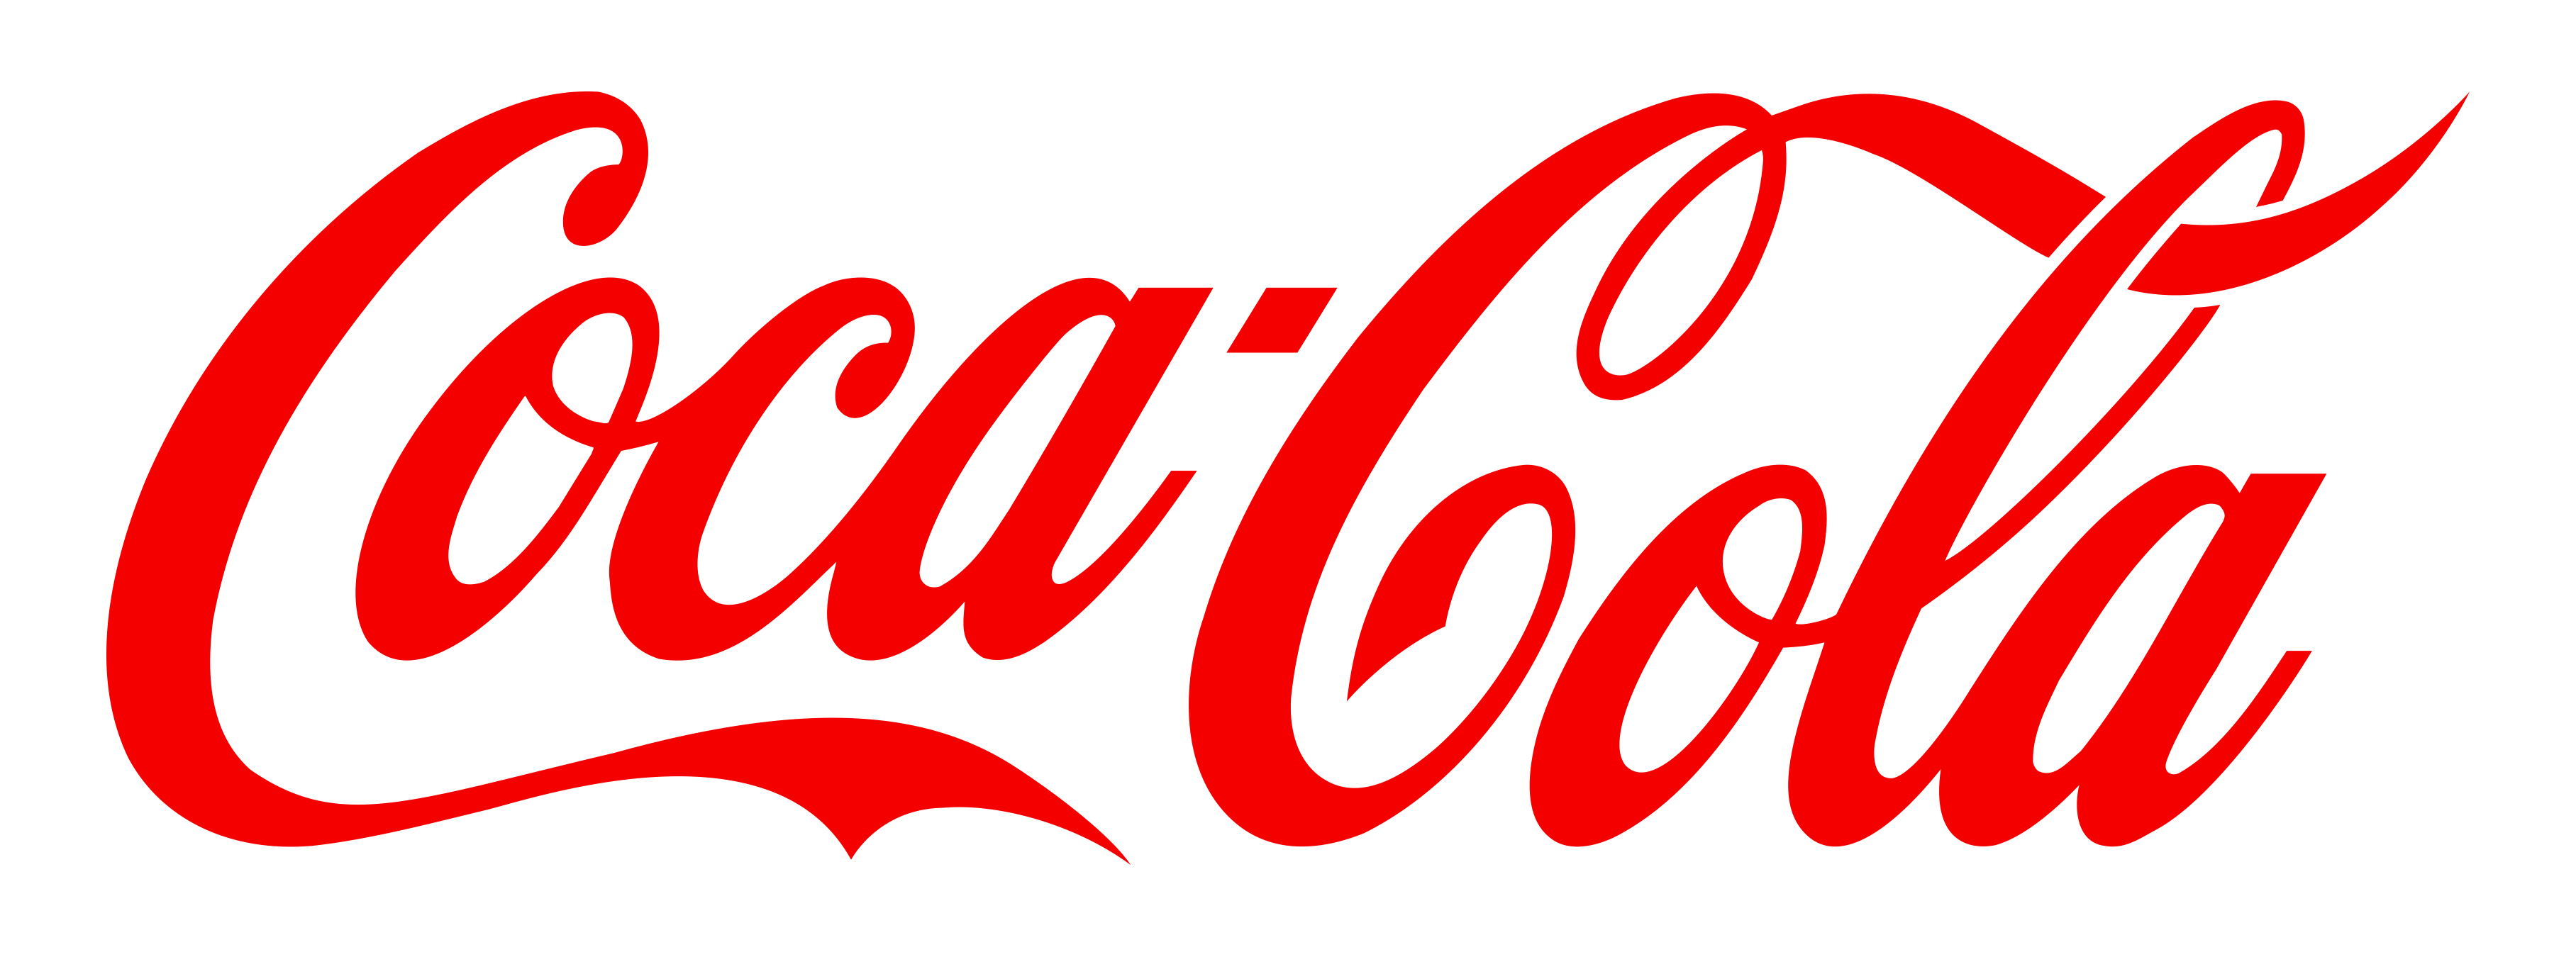 png-transparent-coca-cola-logo-the-coca-cola-company-pepsi-one-coca-cola-food-text-logo